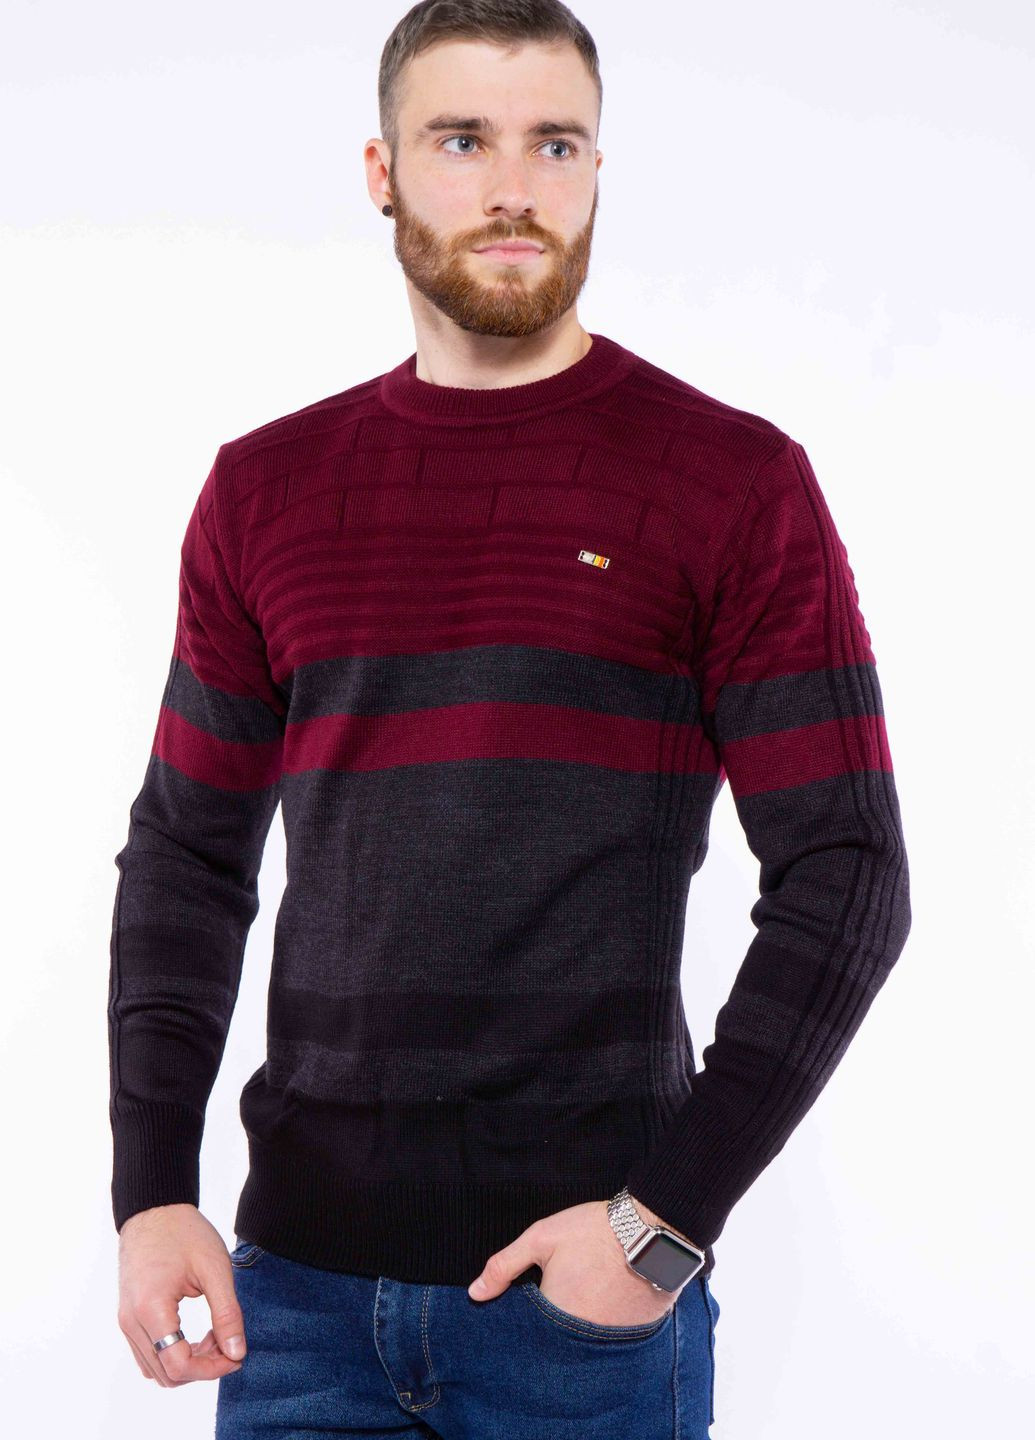 Прозрачный зимний свитер двухцветный (бордово-черный) Time of Style